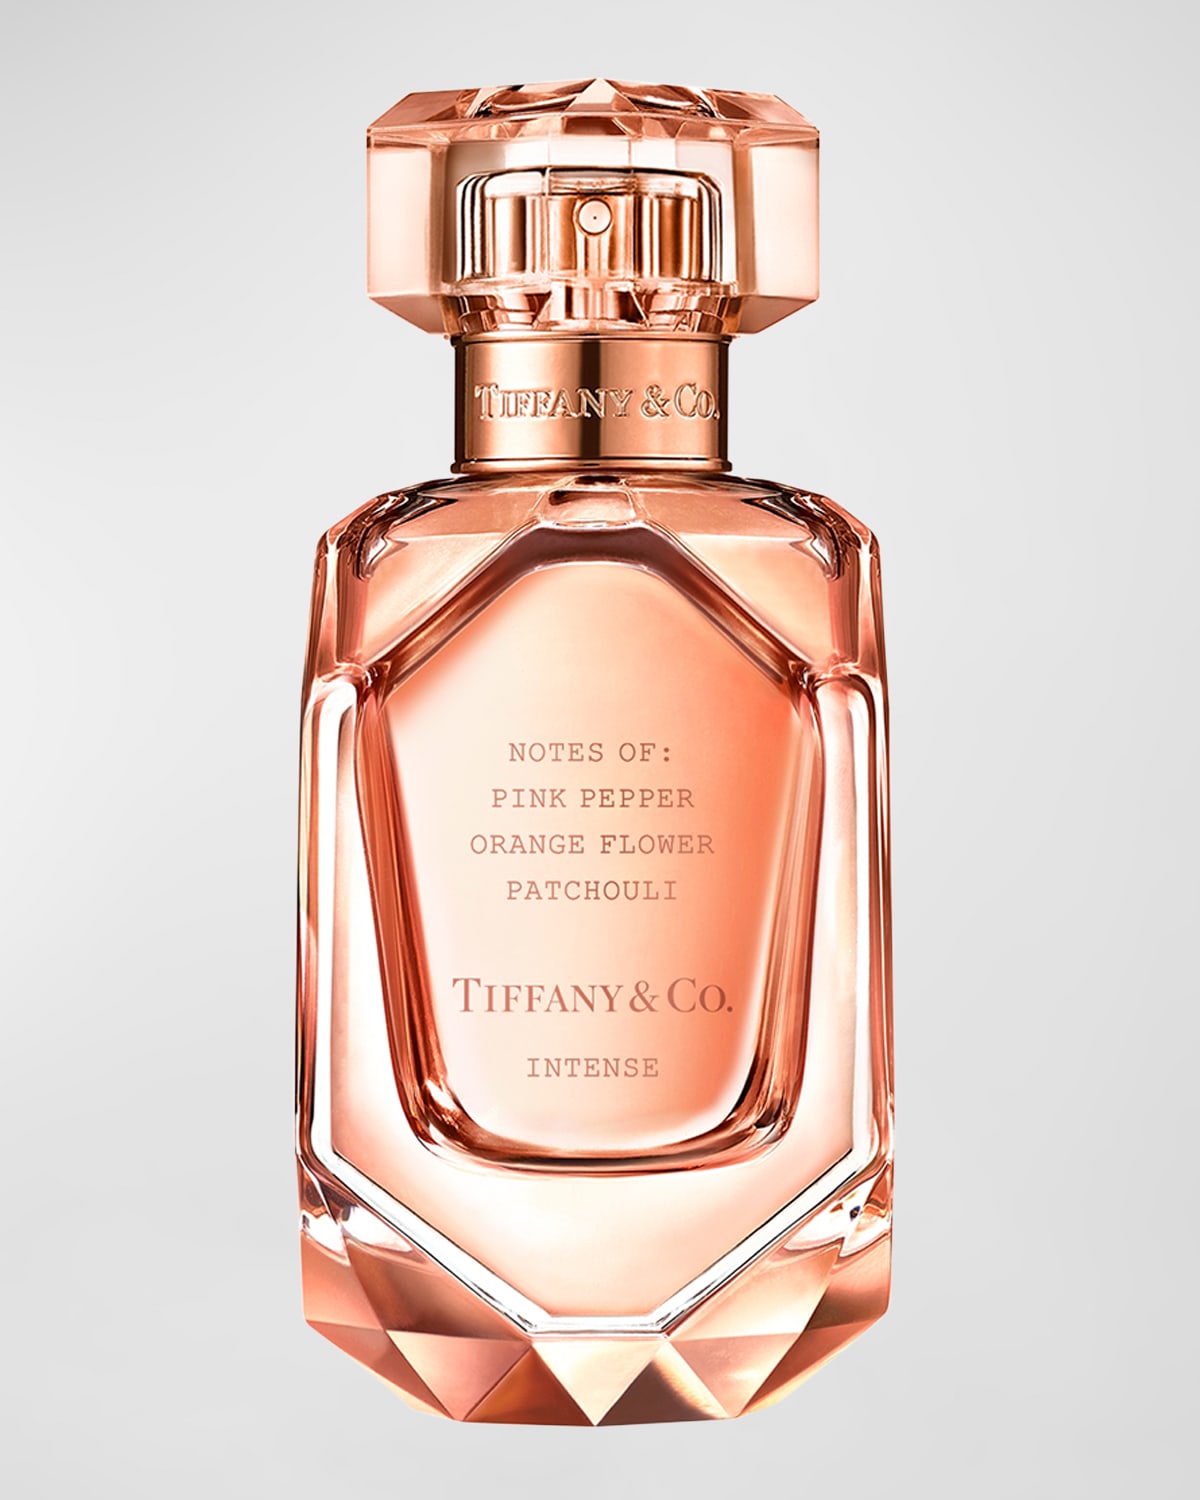 Tiffany & Co Rose Gold Eau de Parfum Intense, 1.6 oz.